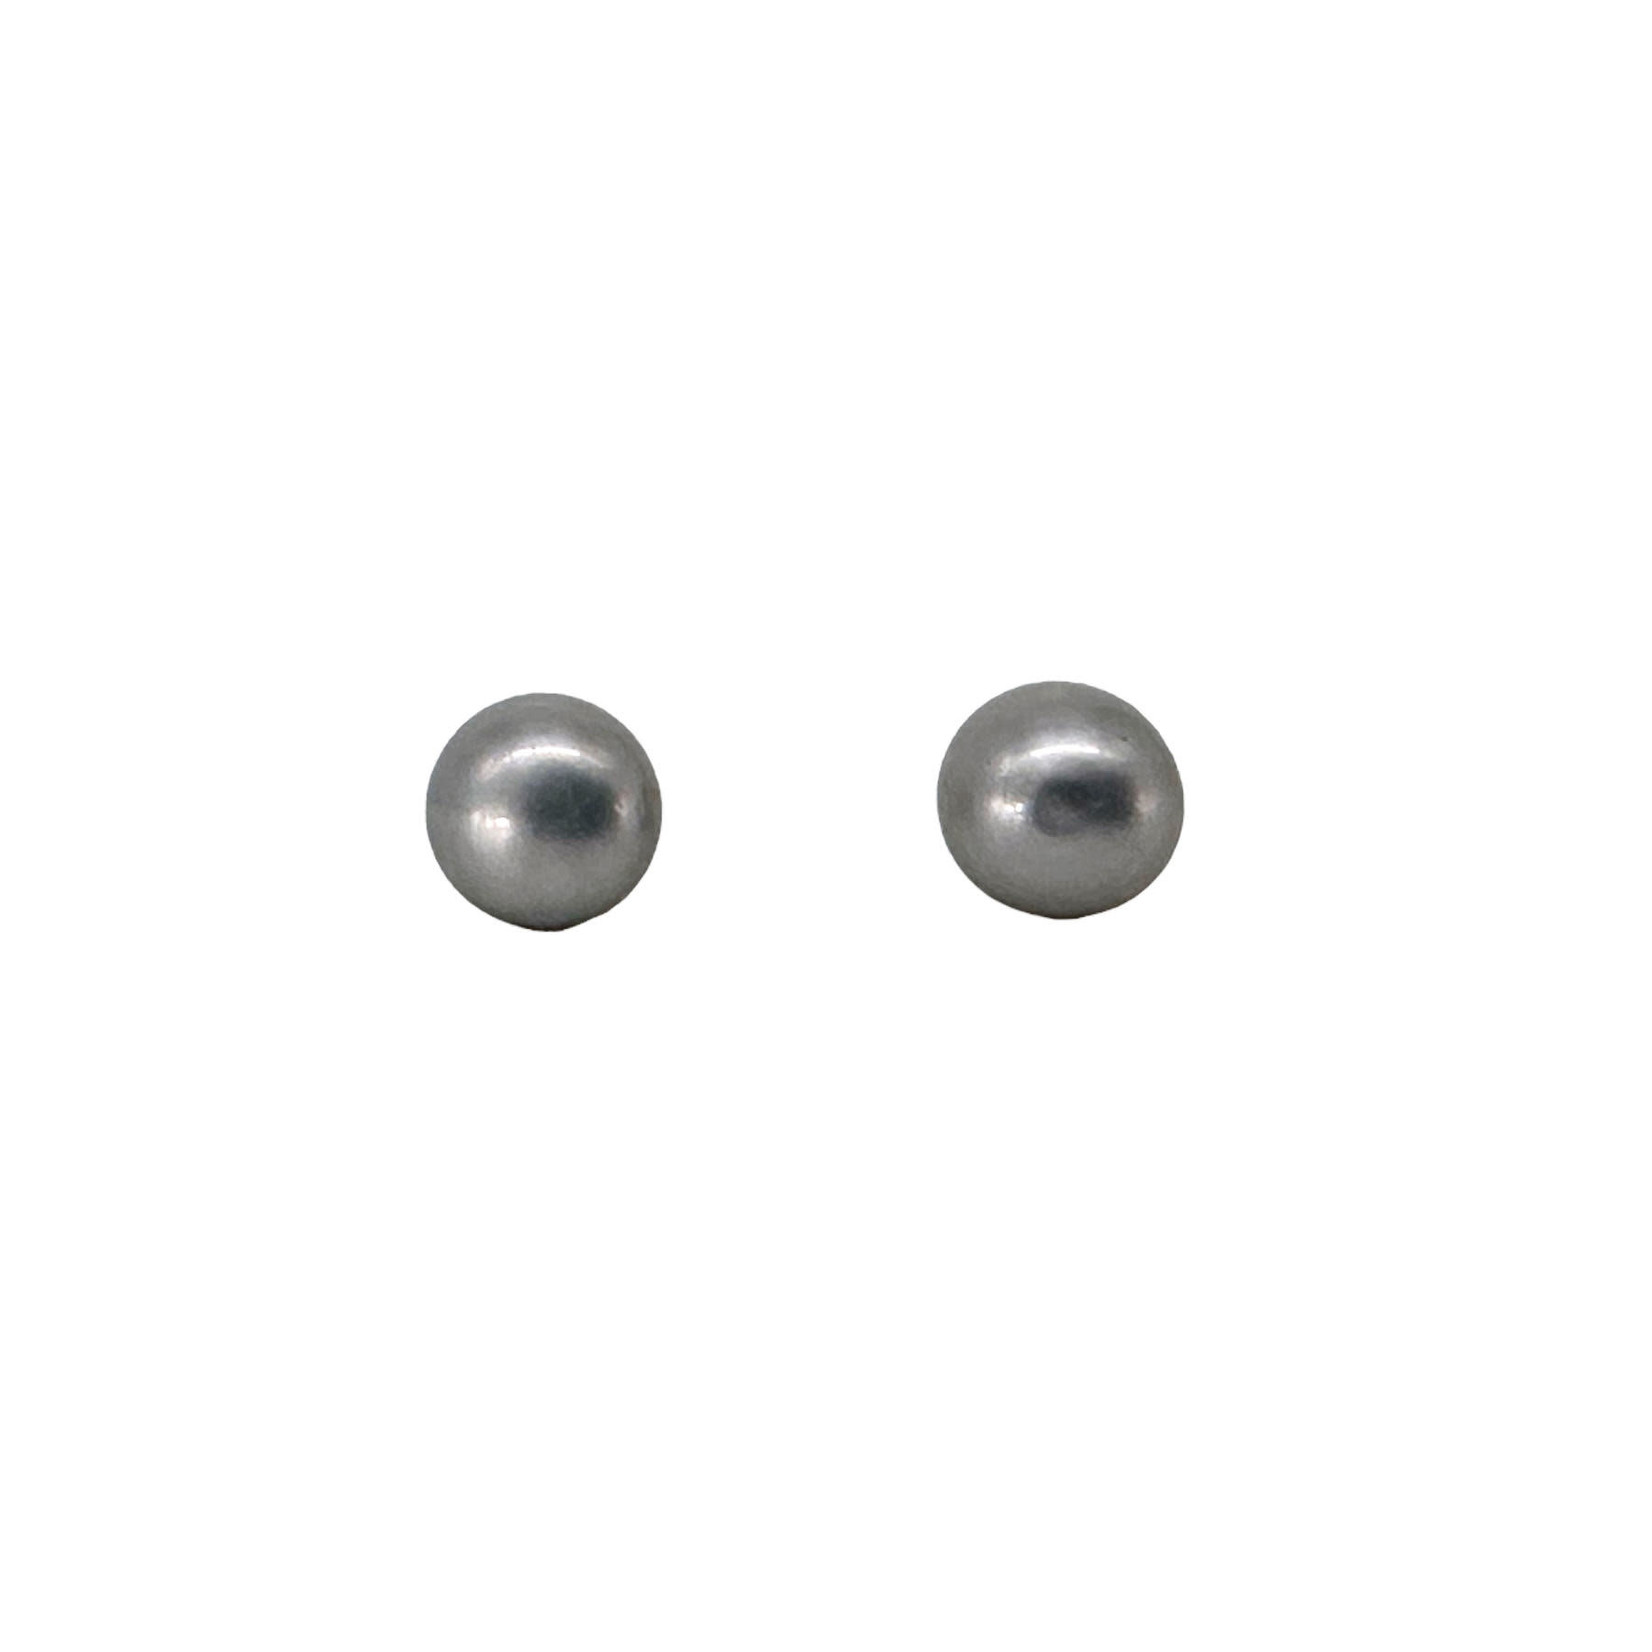 SE517 6mm S/S Pearl Stud Earrings Grey